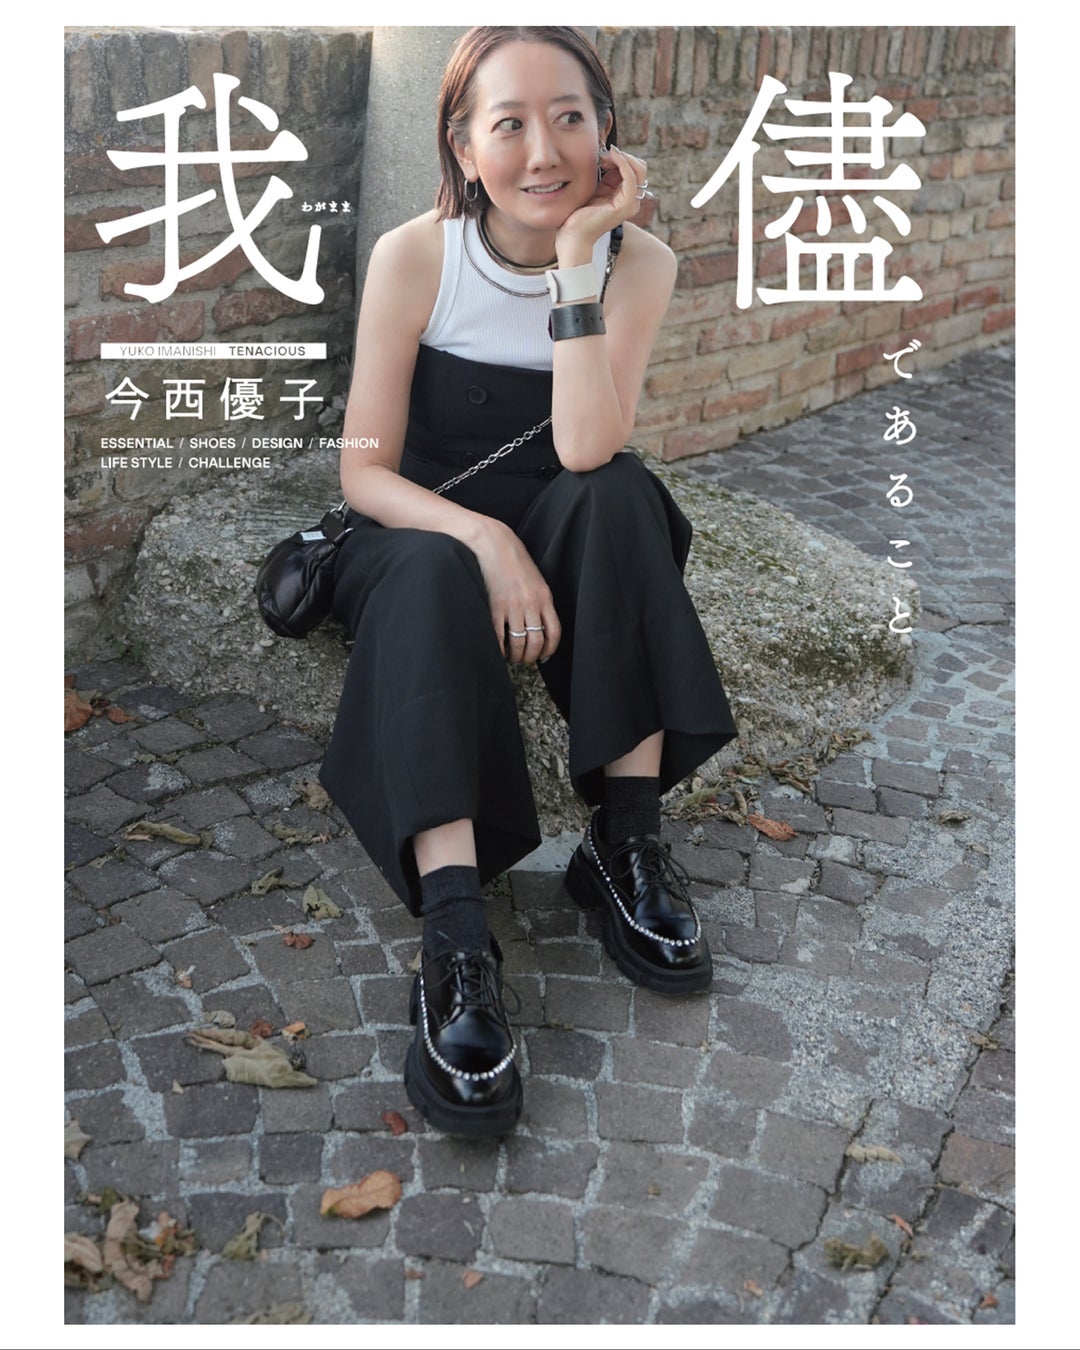 デザイナー今西優子による初のスタイルブック「我儘であること」を2月9日より発売